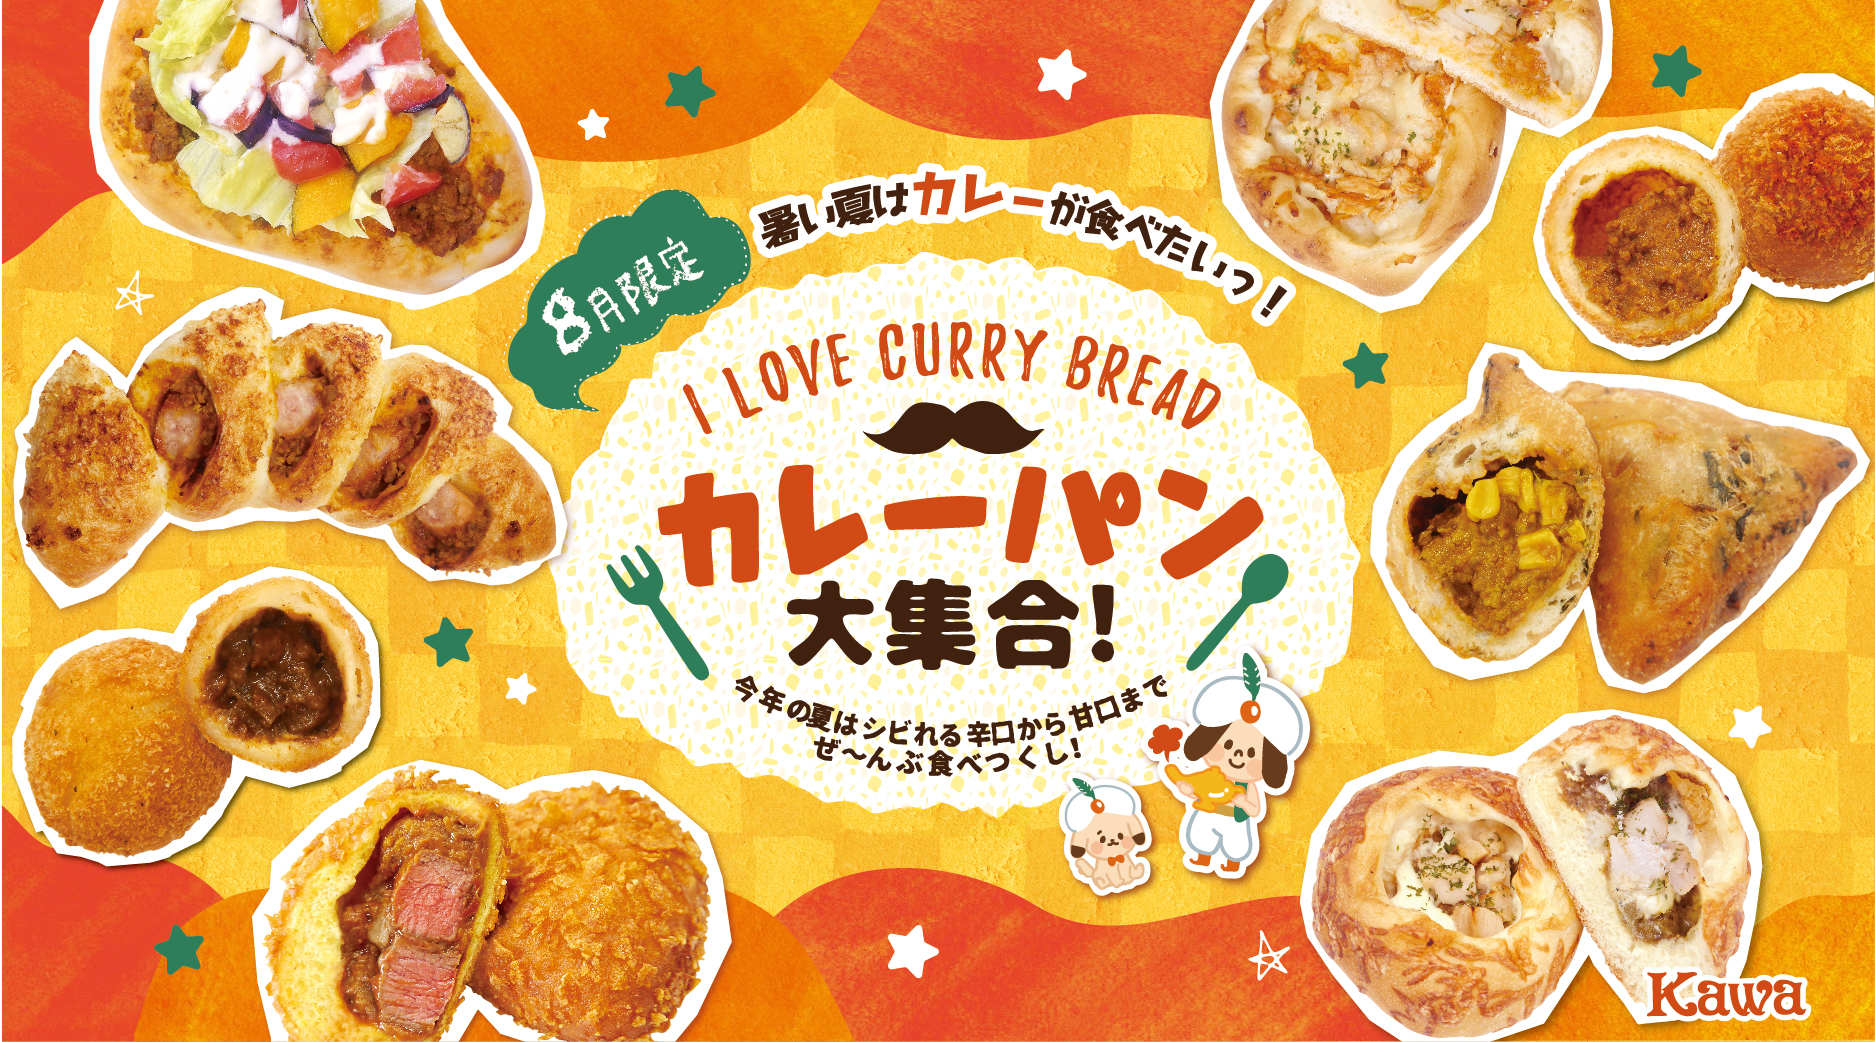 8月限定新商品 Kawaの カレーパン大集合 パン工房カワ